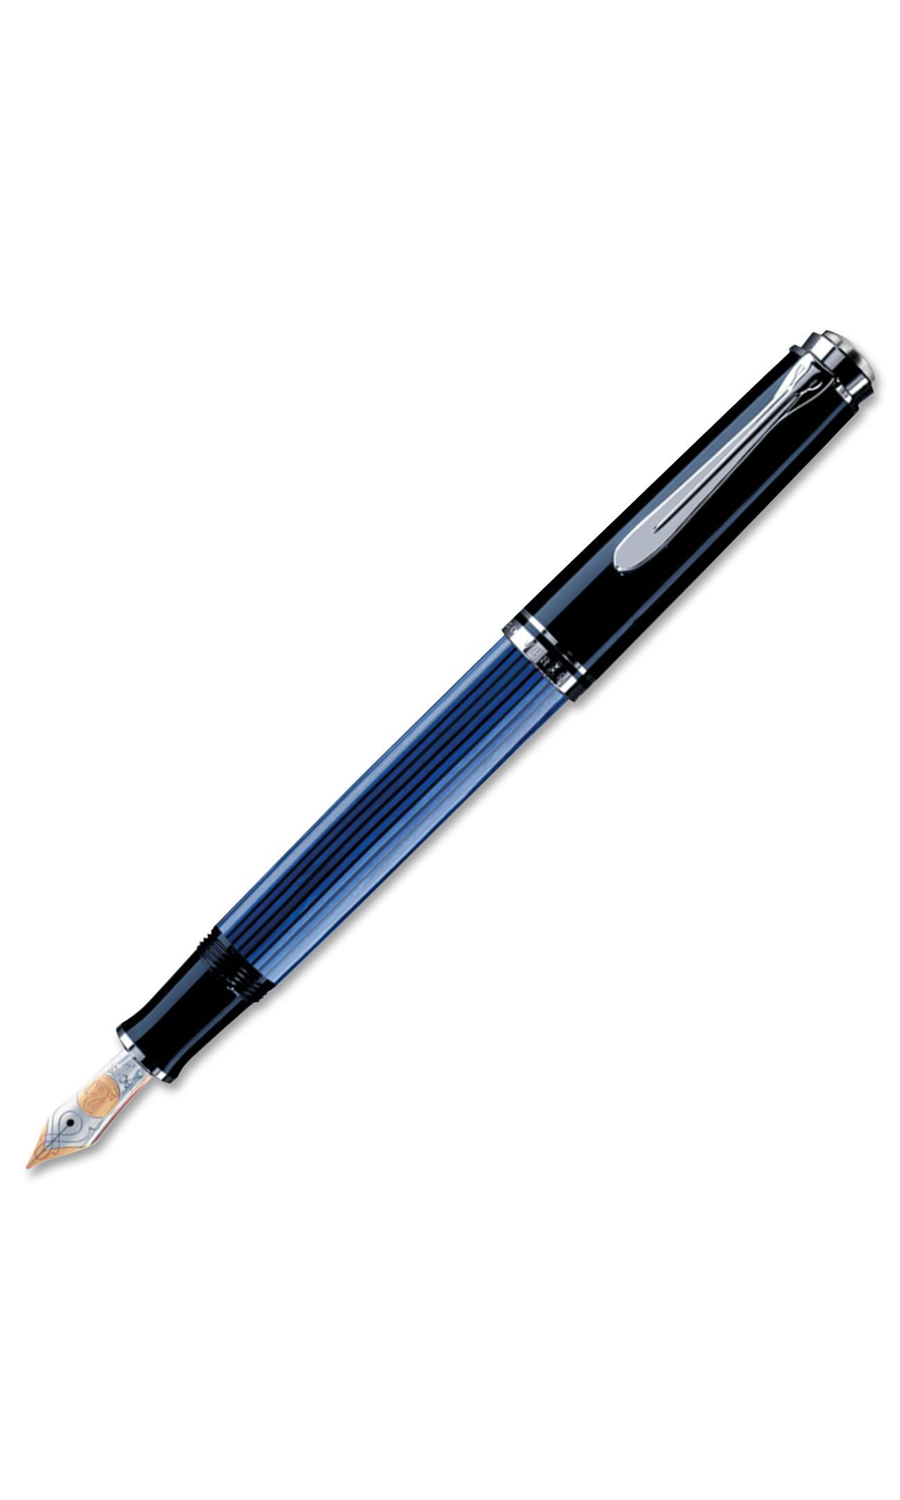 M405 Fine Black/Blue Fountain Pen W/Gift Box